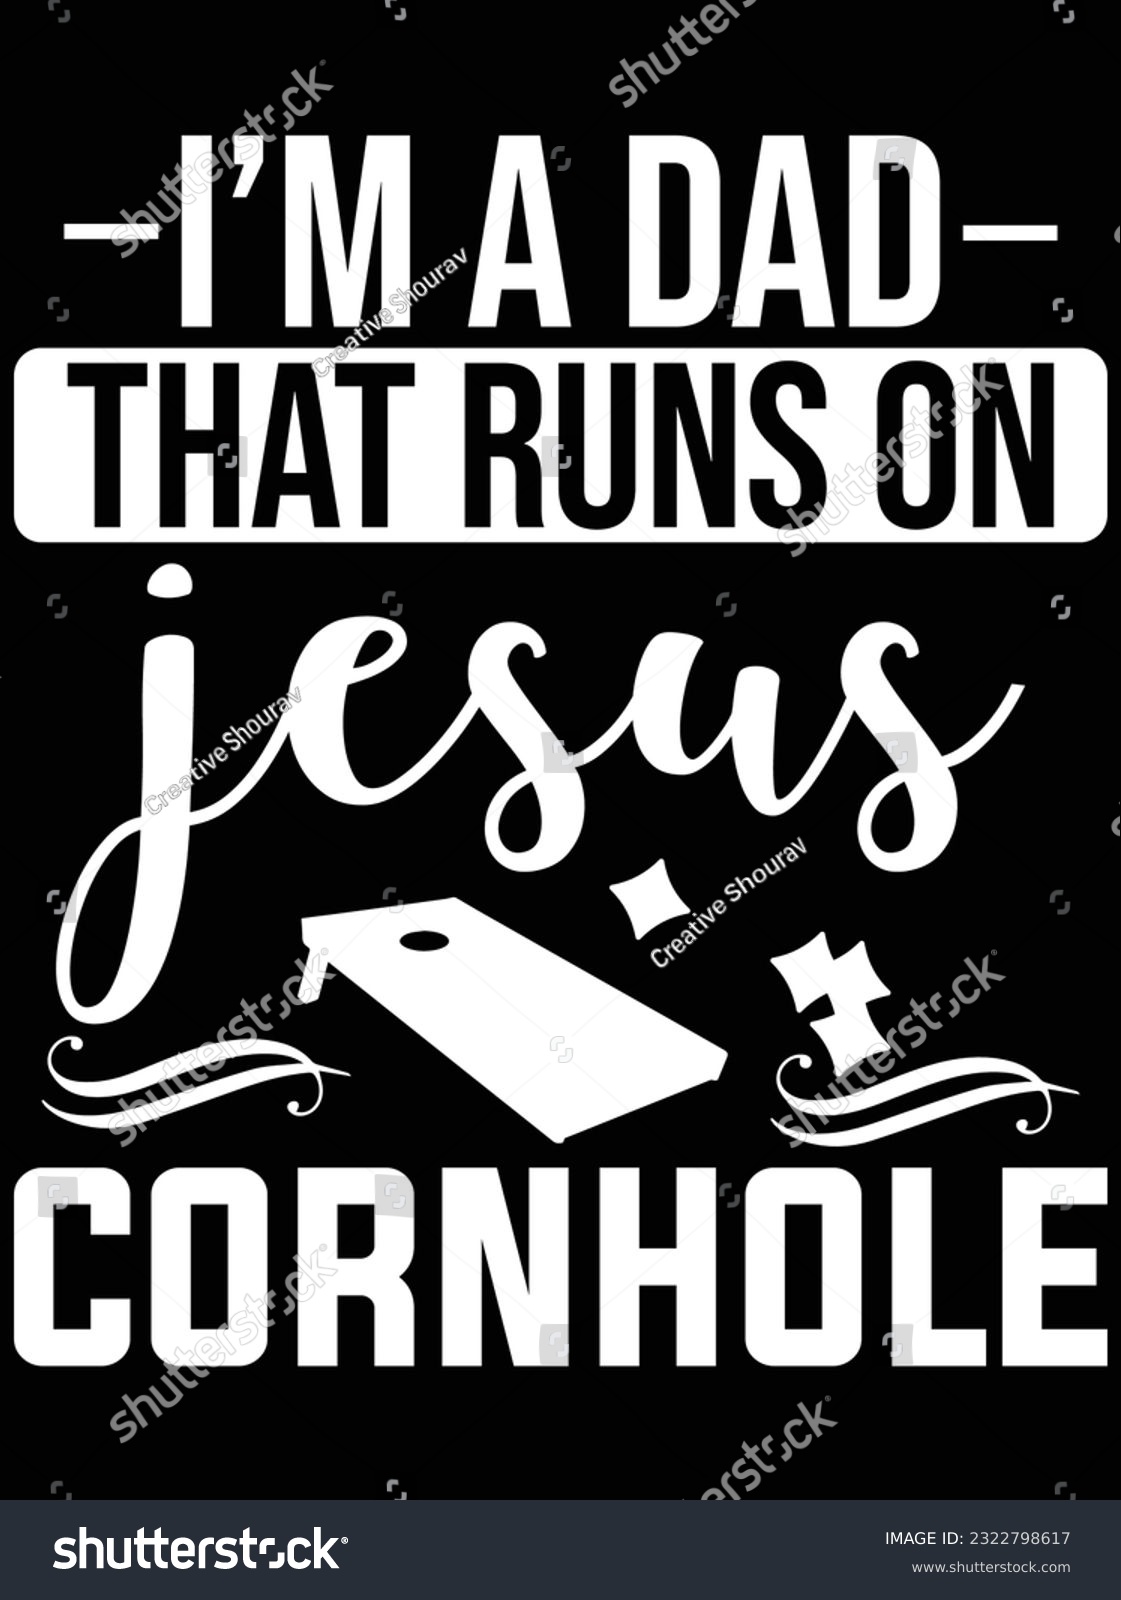 SVG of I'm a dad that runs on jesus cornhole vector art design, eps file. design file for t-shirt. SVG, EPS cuttable design file svg